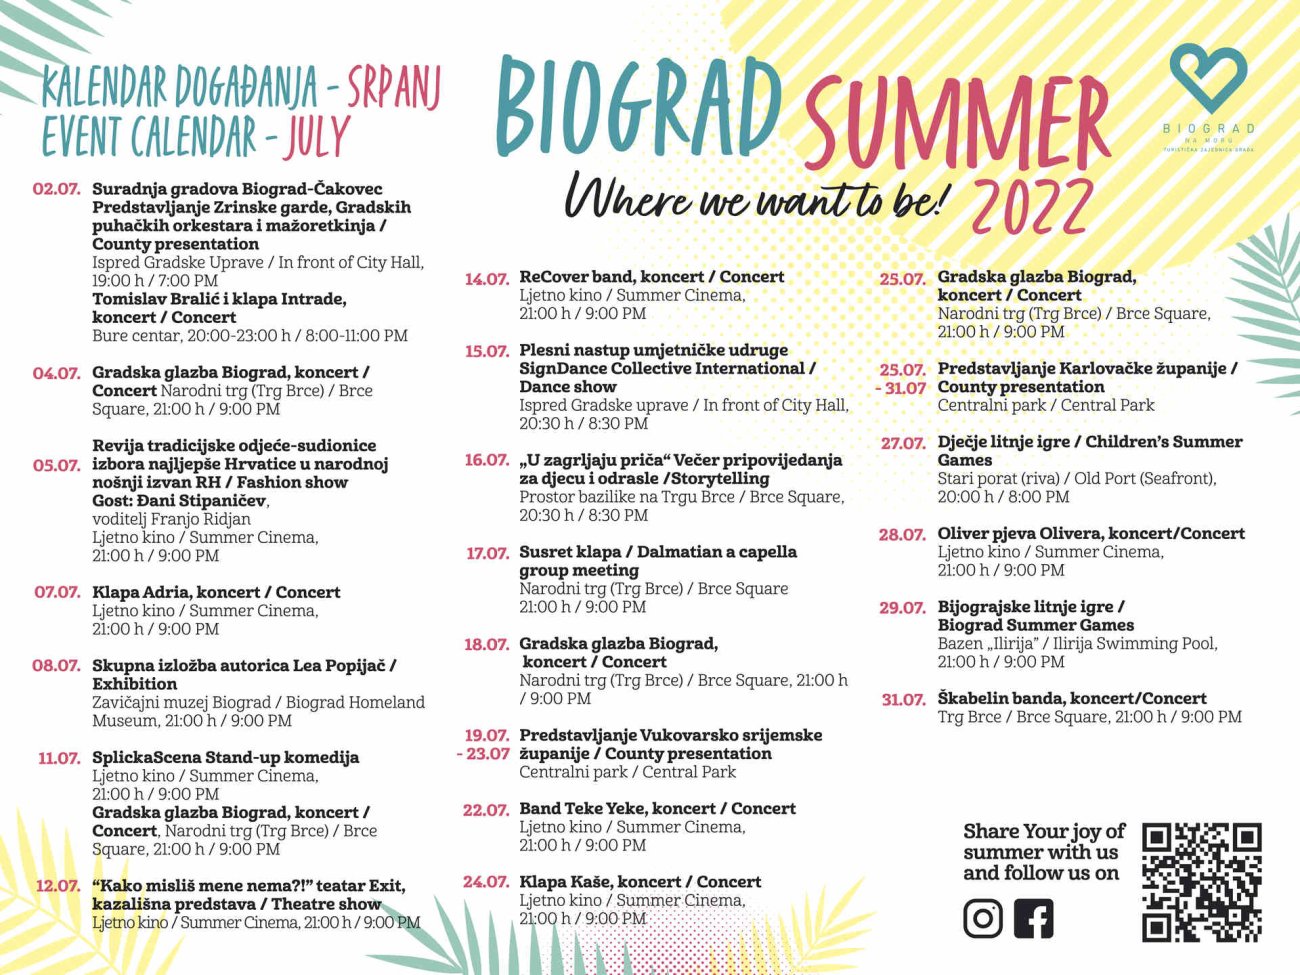 Biograd summer JULY/SRPANJ 2022